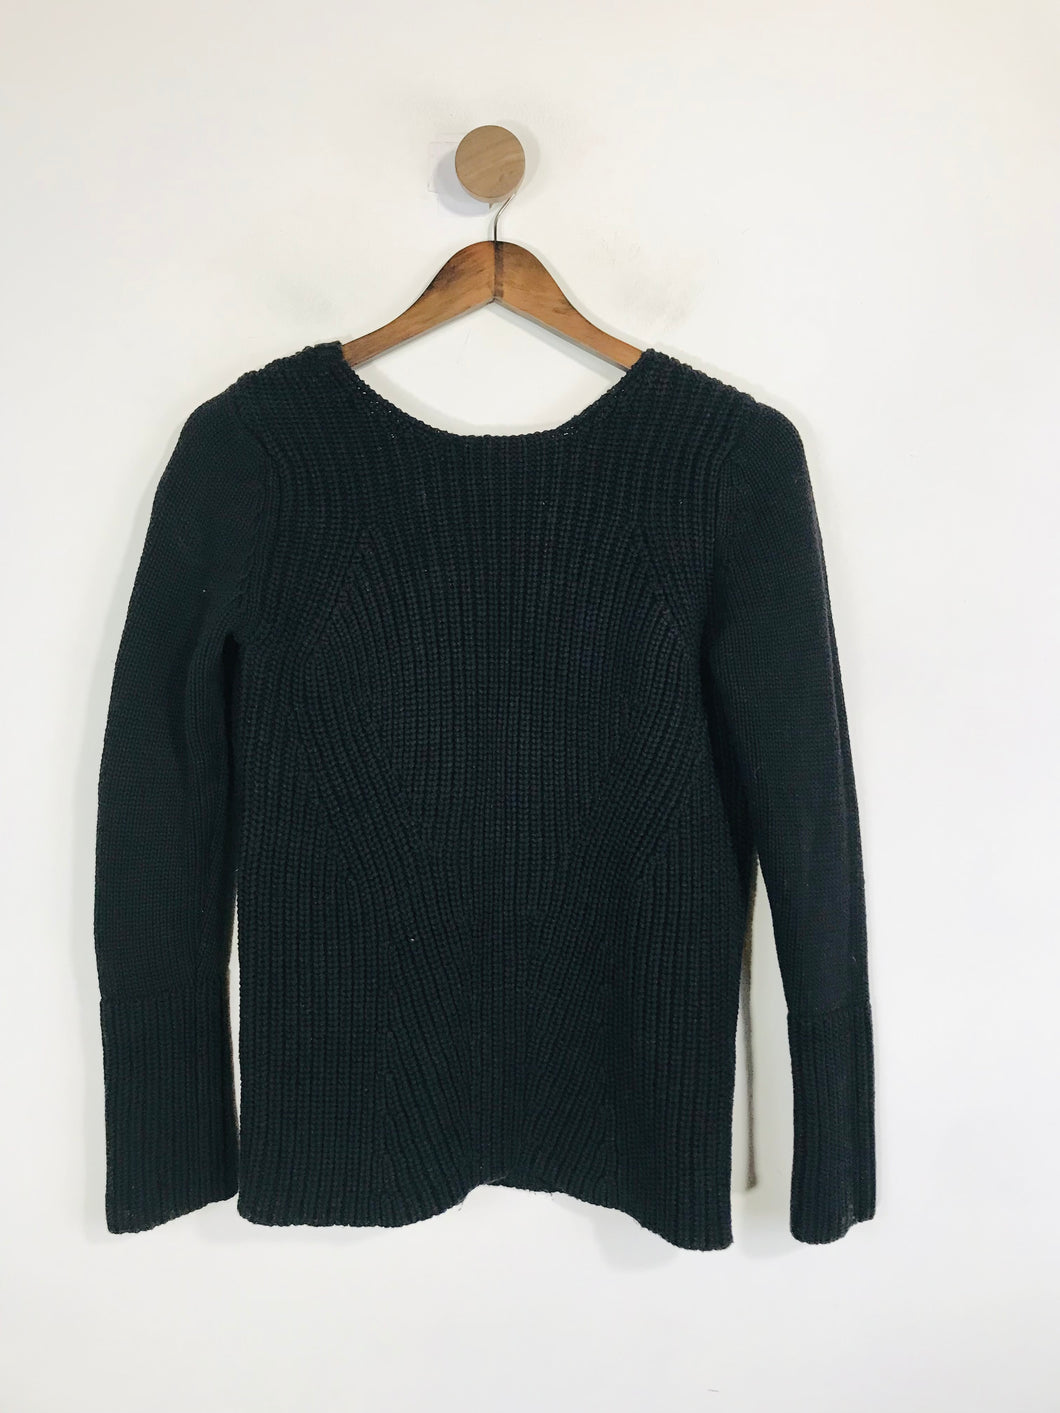 Zara Women's Knit Jumper | M UK10-12 | Black